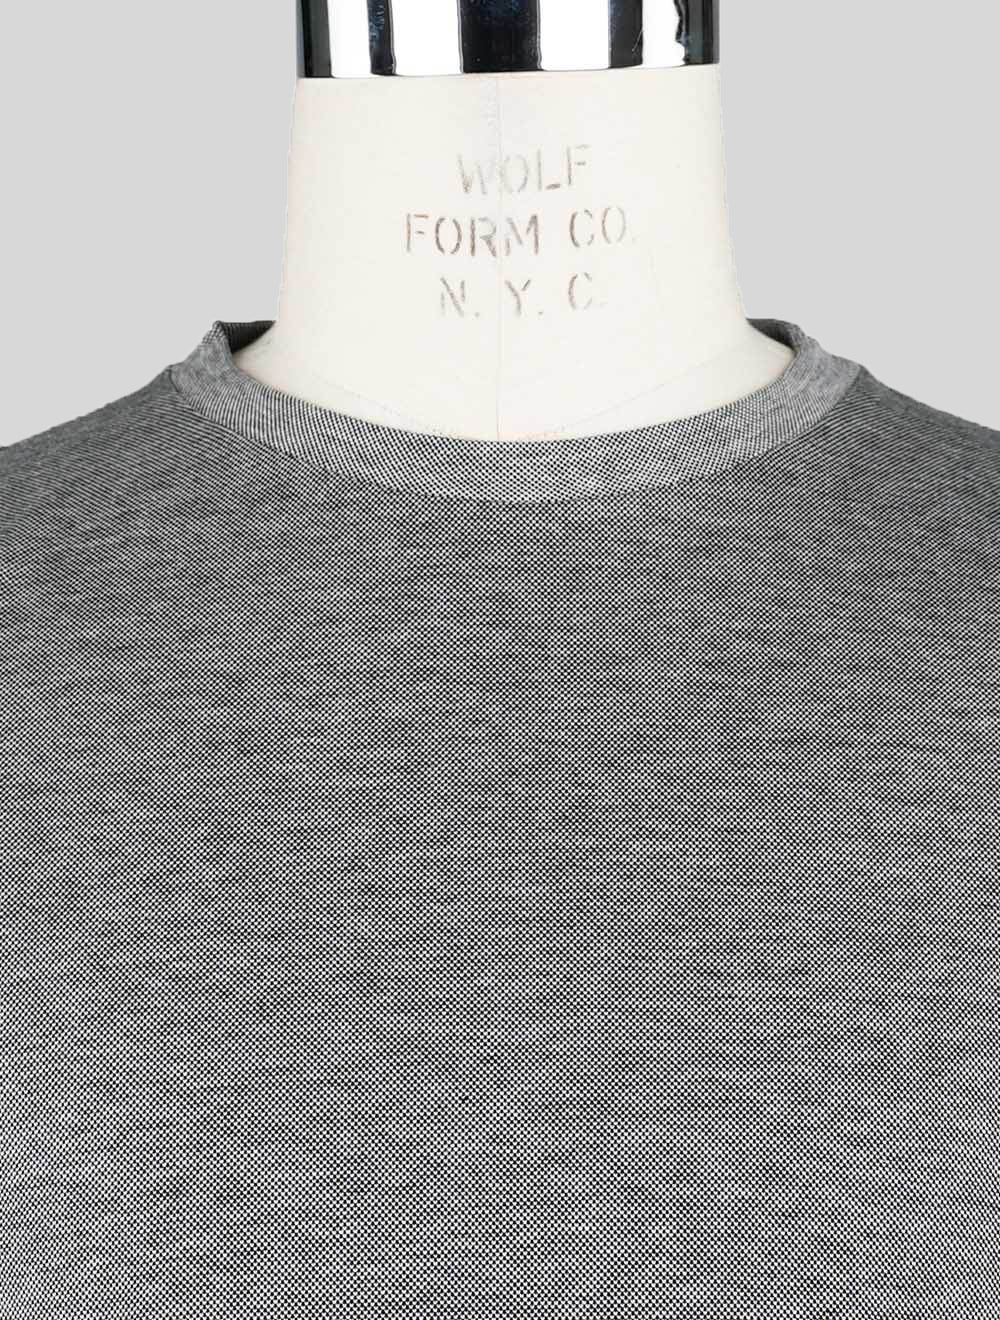 Sartorio Napoli-T-shirt gris en coton